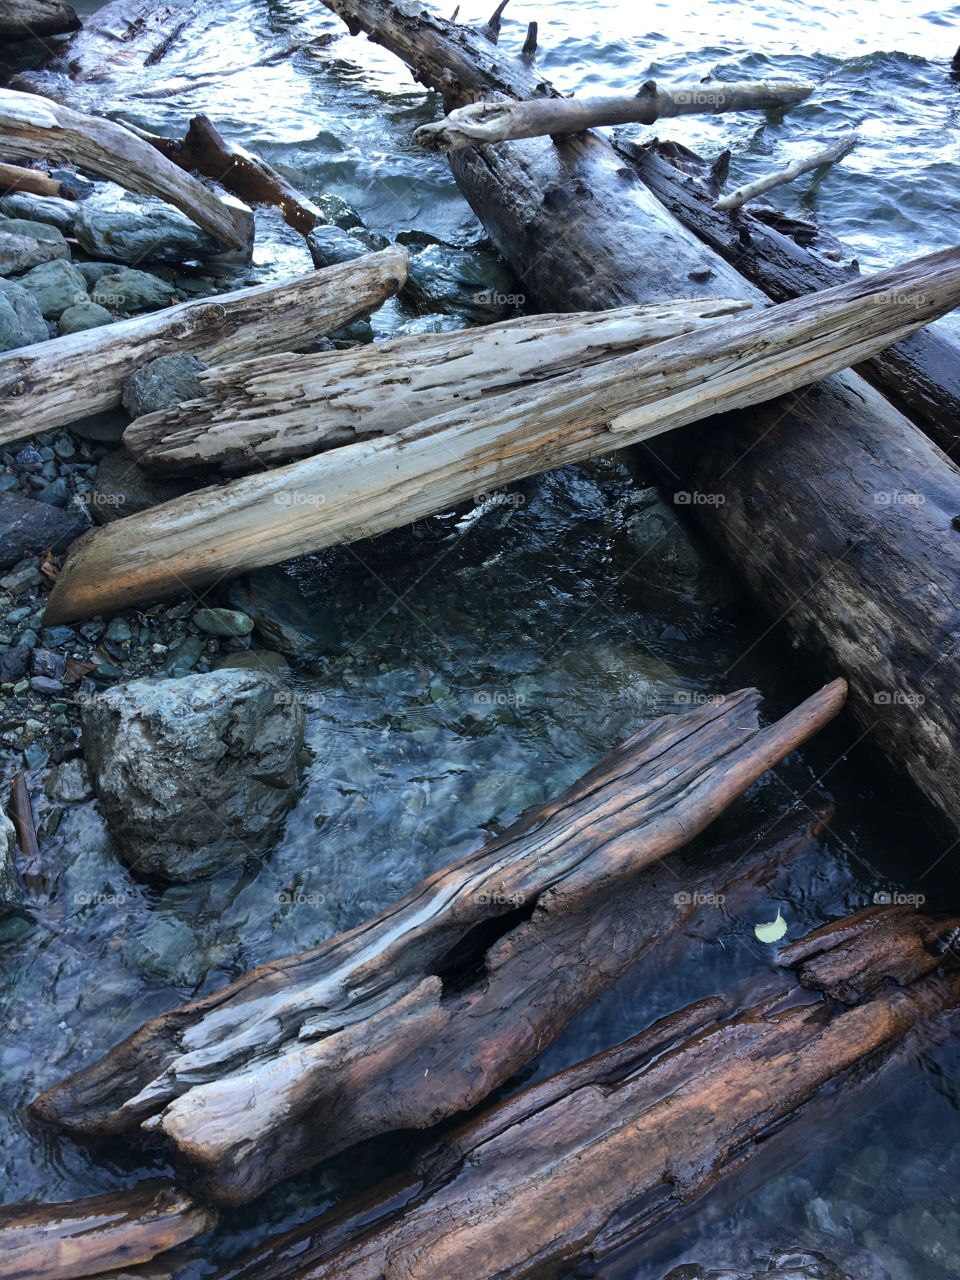 Logs washed ashore at Baker lake